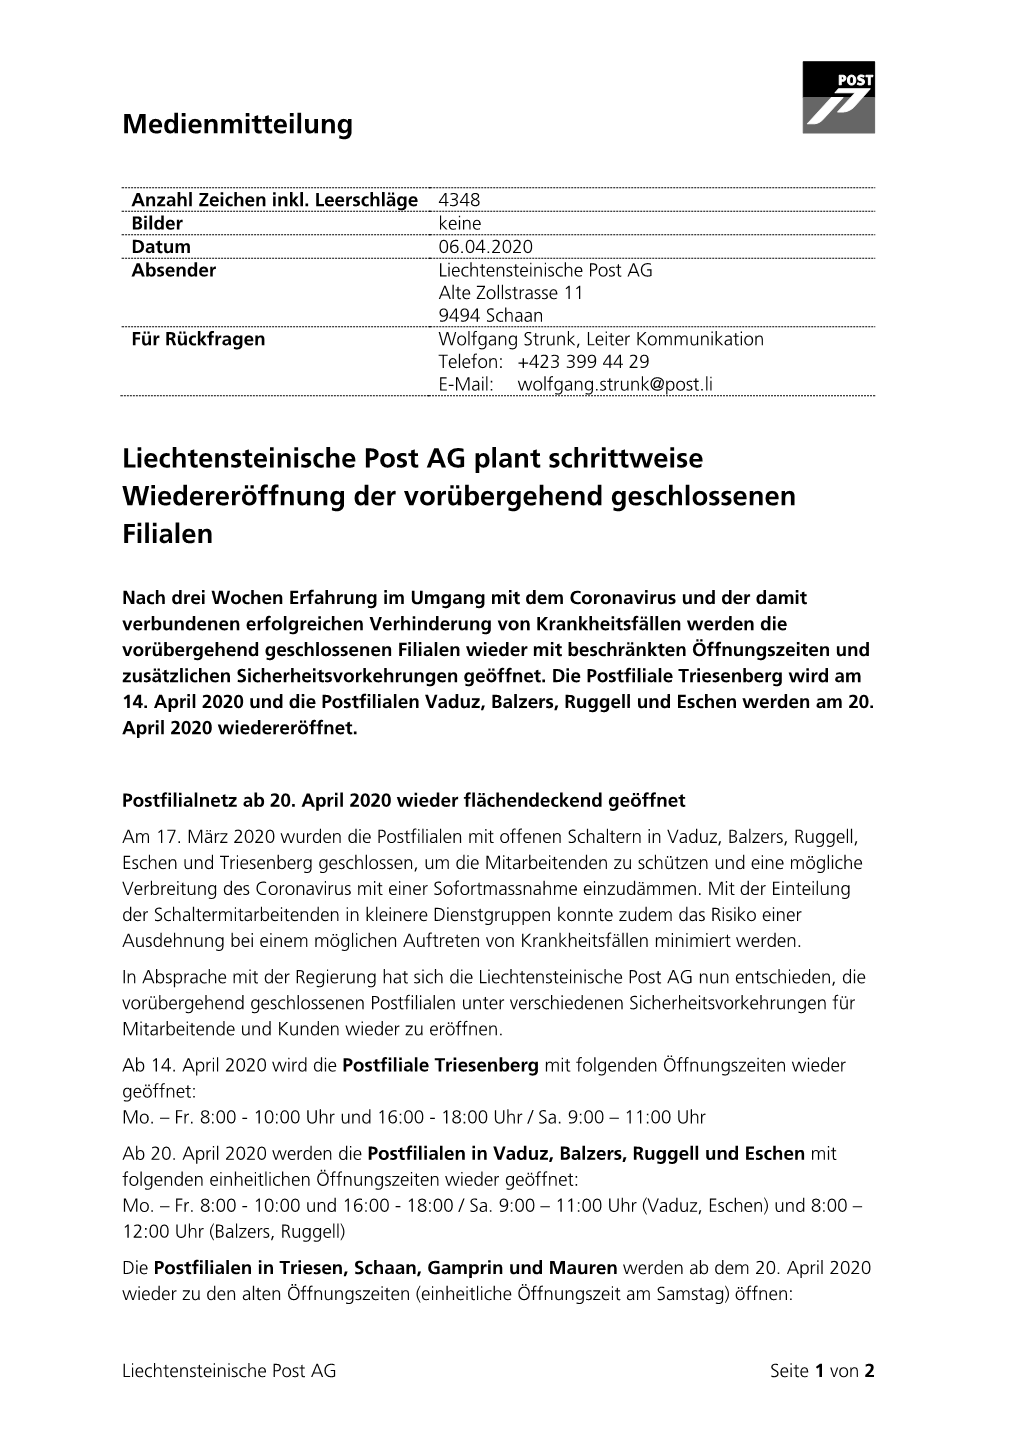 Medienmitteilung Liechtensteinische Post AG Plant Schrittweise